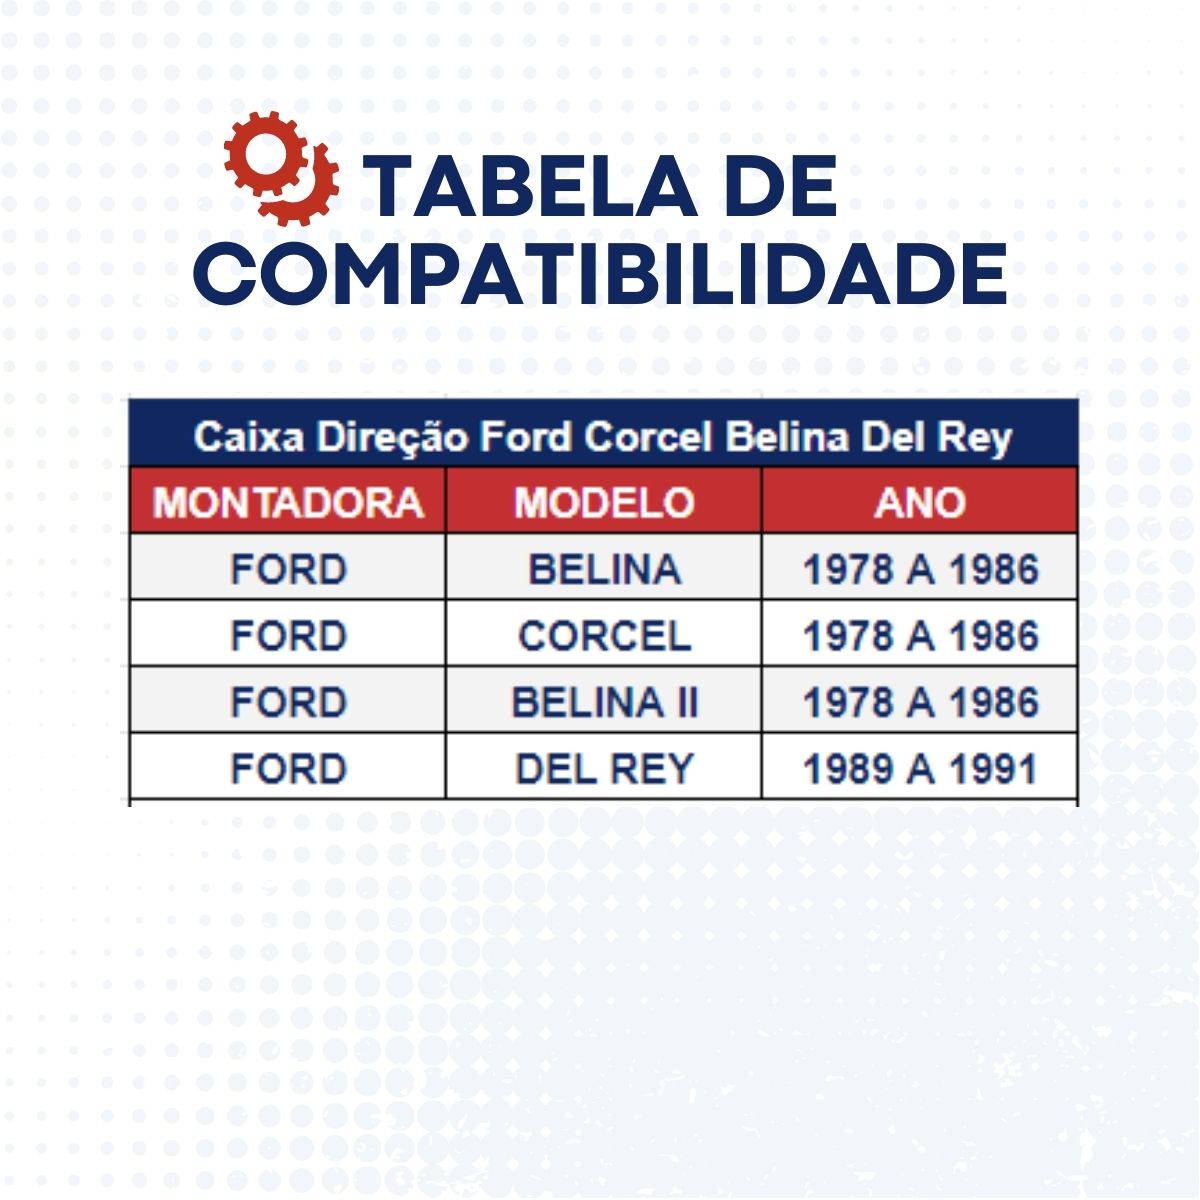 Caixa Direção Ford Corcel Belina Del Rey